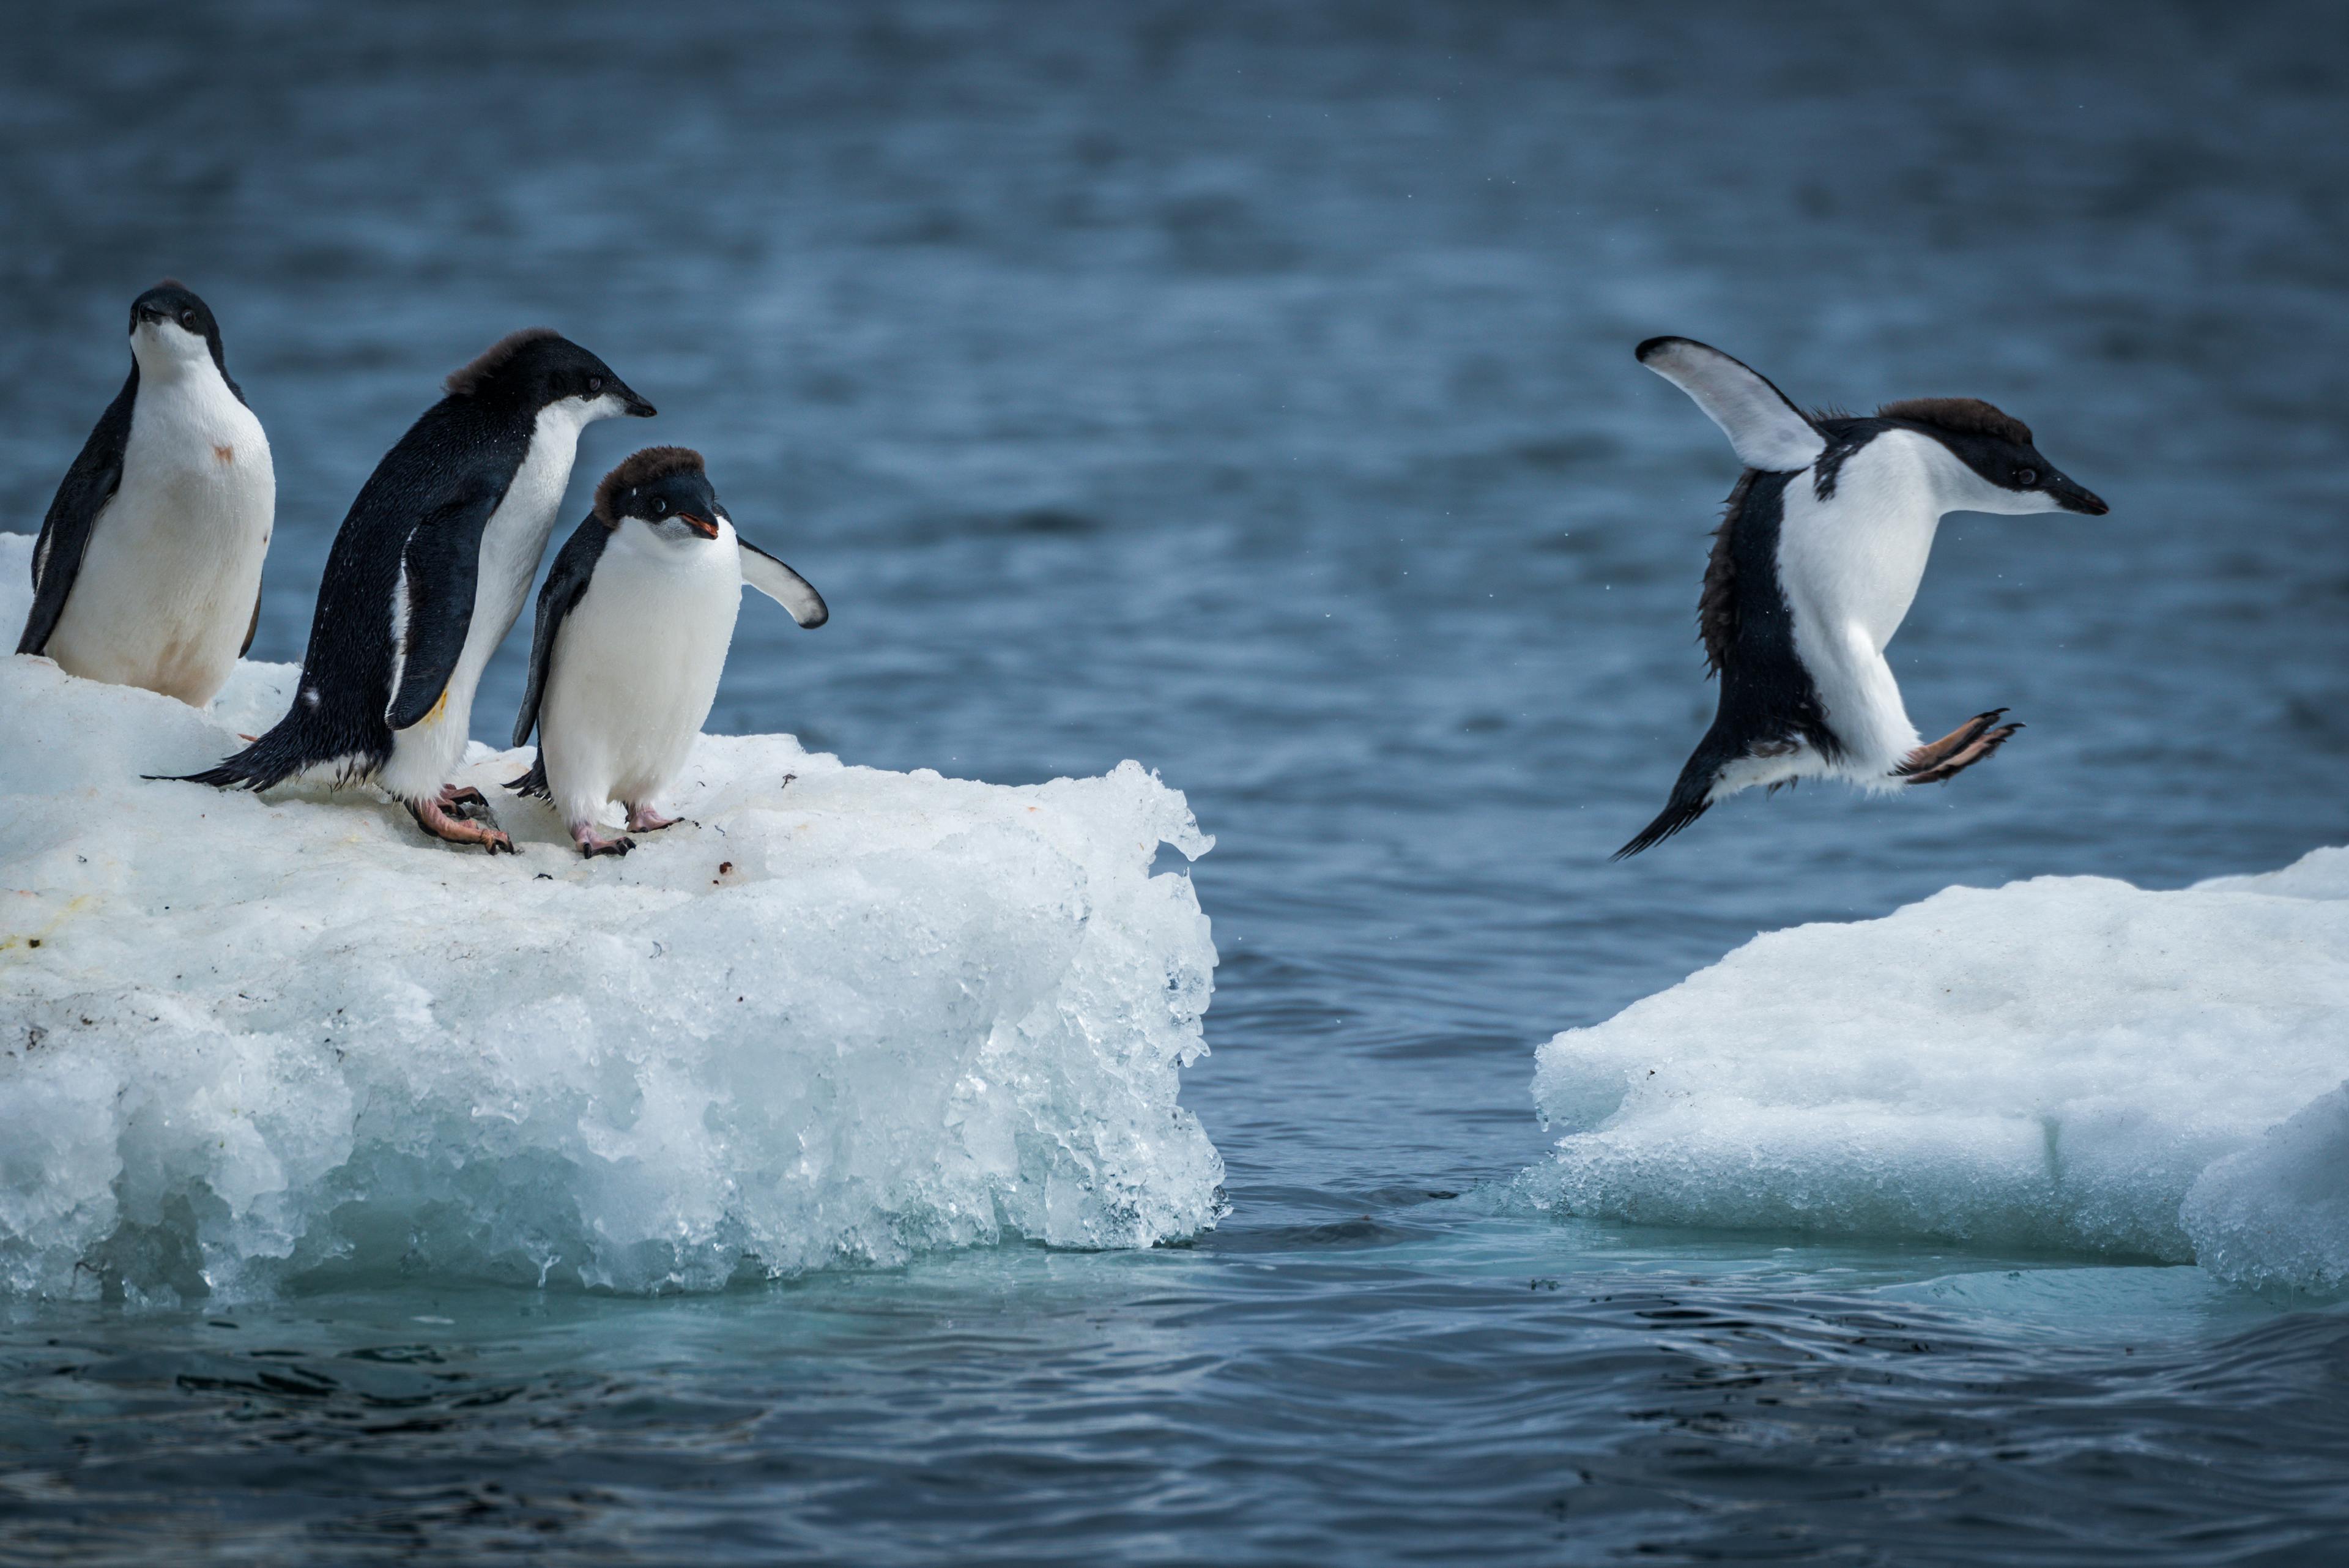 Drei Pinguine sitzen auf einer Eisscholle, ein Pinguin springt auf eine andere Eisscholle über den Ozean.